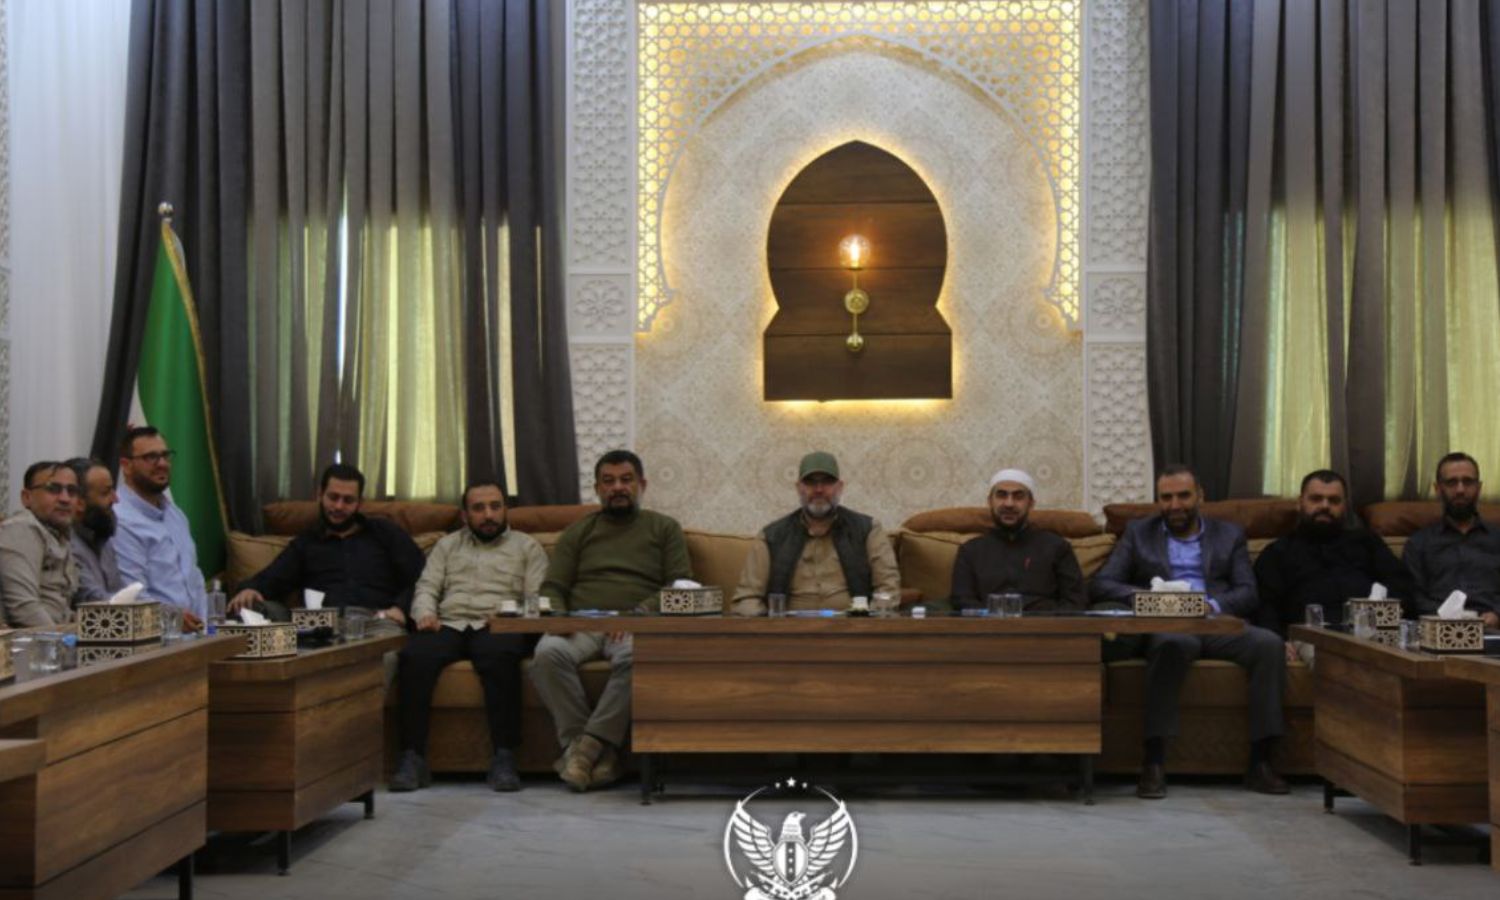 أعضاء وشخصيات في "مجلس الشورى" التابع لـ"الفيلق الثالث" المنضوي تحت راية "الجيش الوطني السوري" المدعوم من تركيا خلال أحد الاجتماعات- 3 من تشرين الثاني 2022 (الفيلق الثالث)